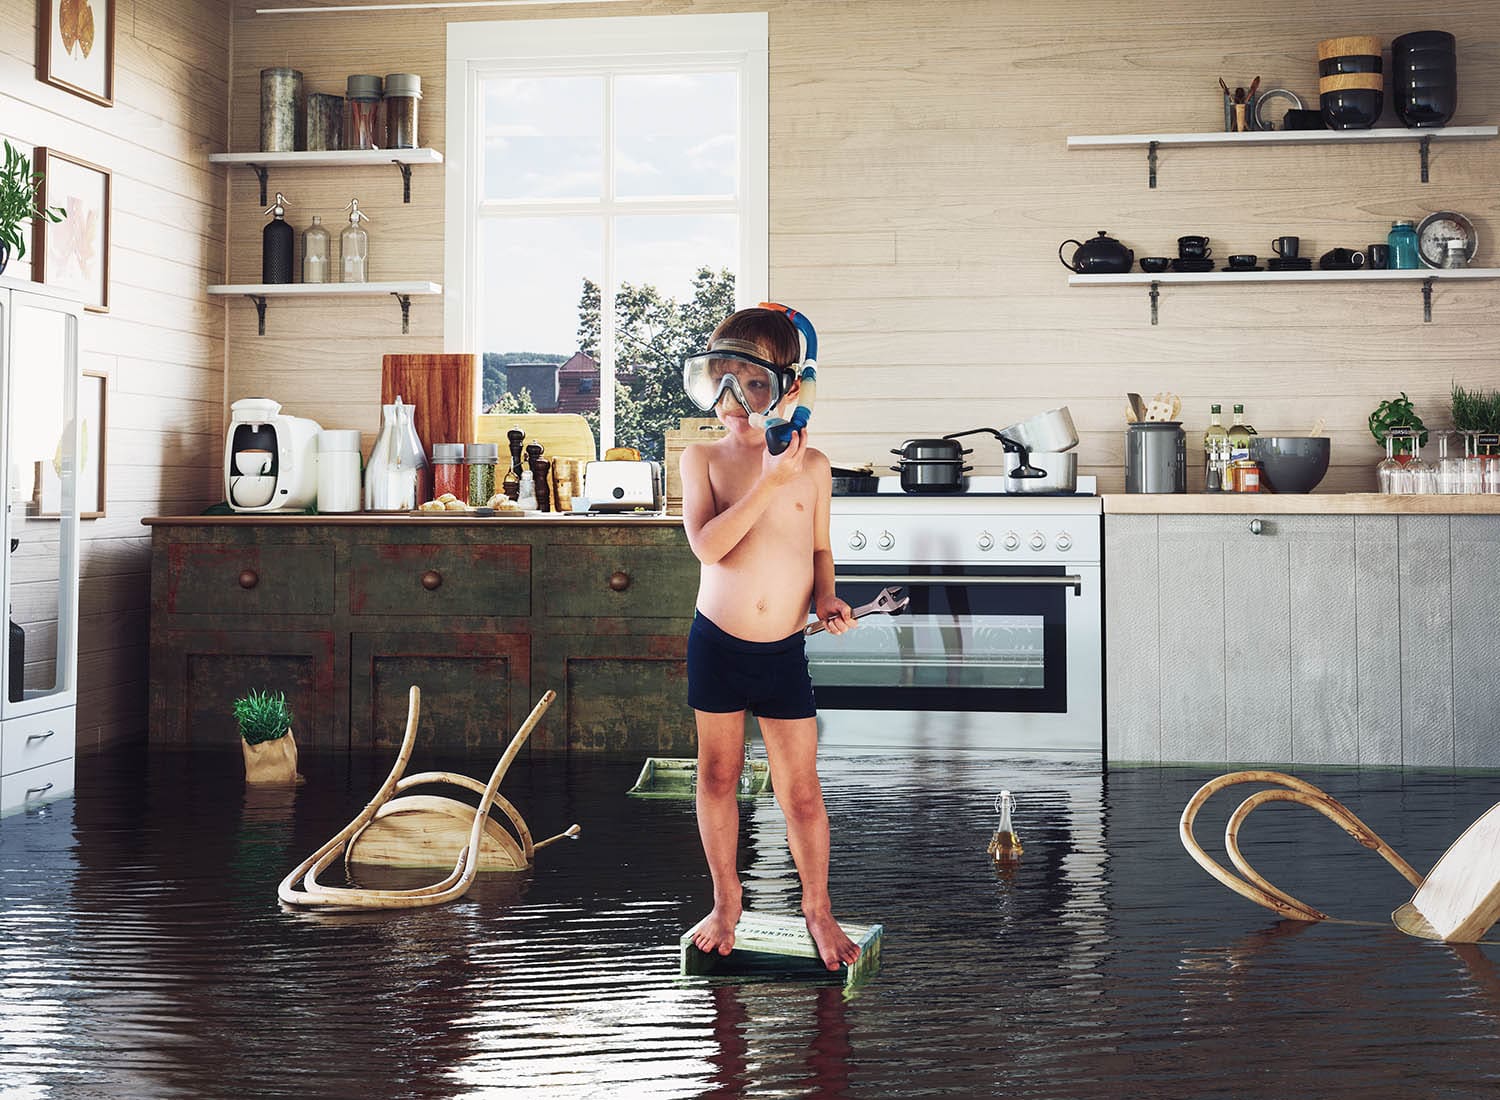 Leckageortung Hauptbild: Kind spielt mit Werkzeug in einer überfluteten Küche